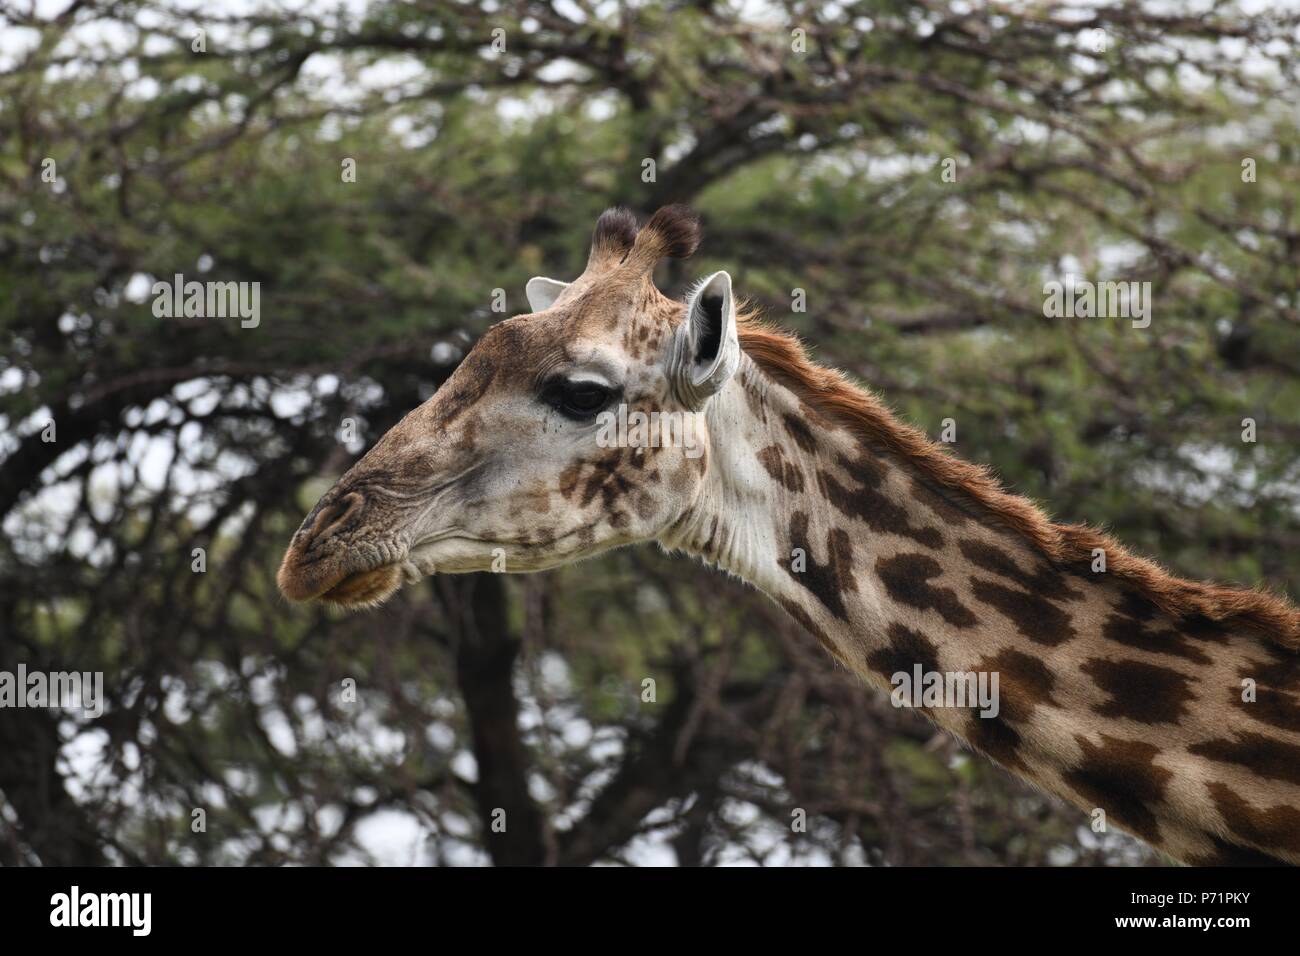 The Maasai giraffe (Giraffa camelopardalis tippelskirchii), also called Kilimanjaro giraffe. Picture taken in the valley at Mahali Mzuri, Maasai Mara. Stock Photo